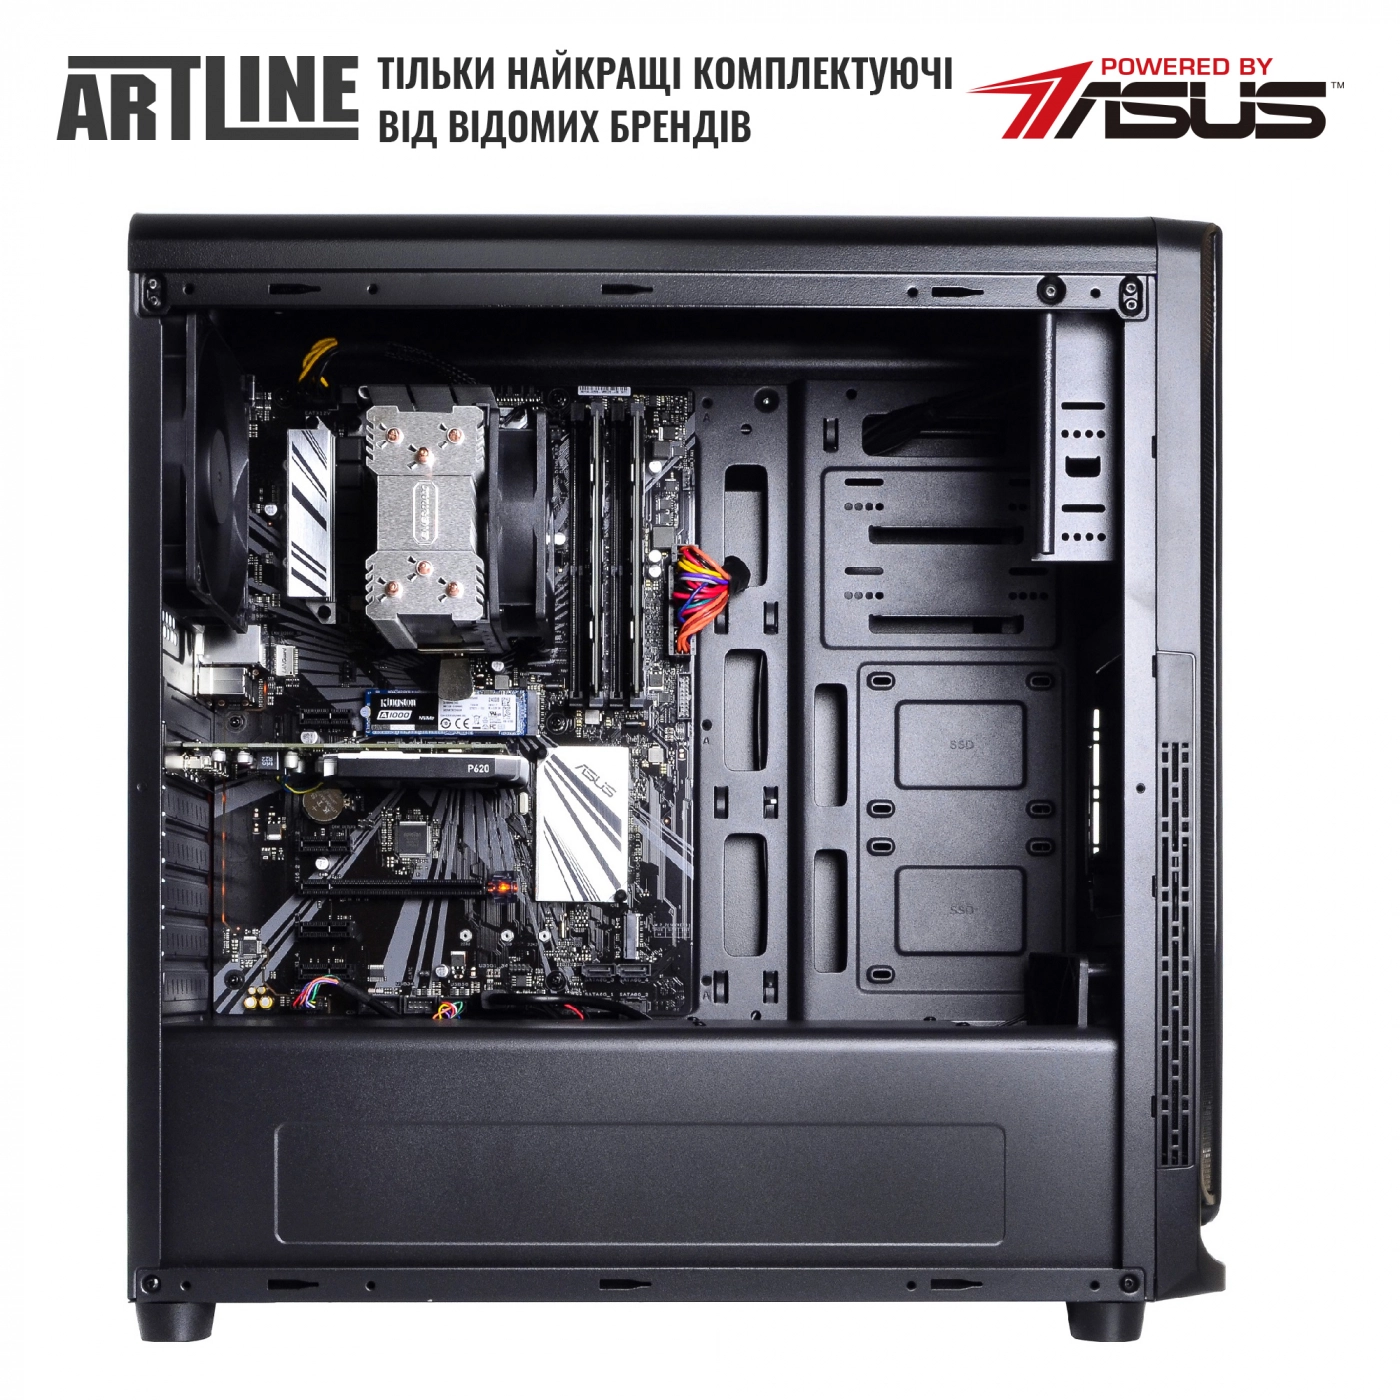 Купить Сервер ARTLINE Business T25v37 - фото 5